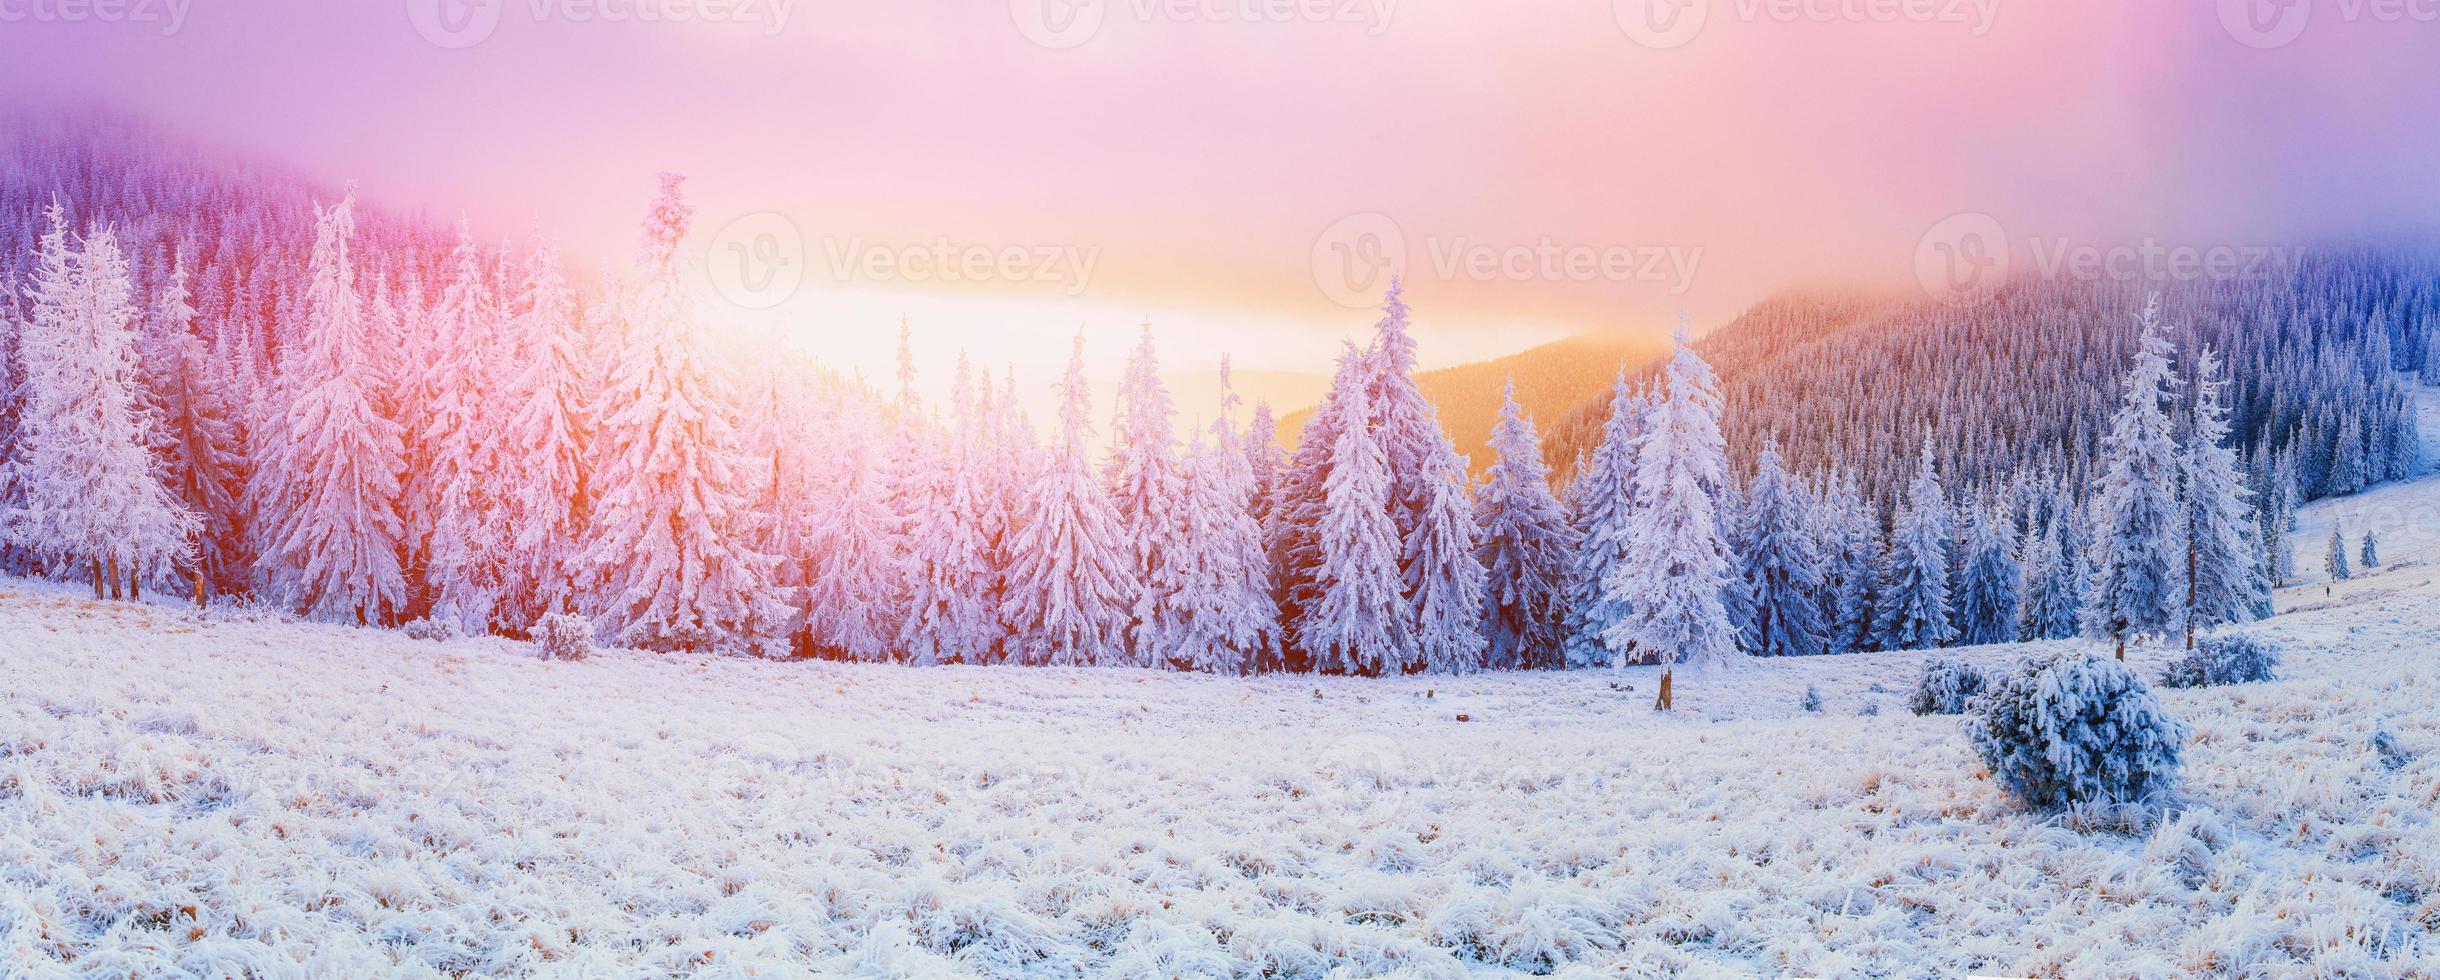 arbres de paysage d'hiver dans le gel photo